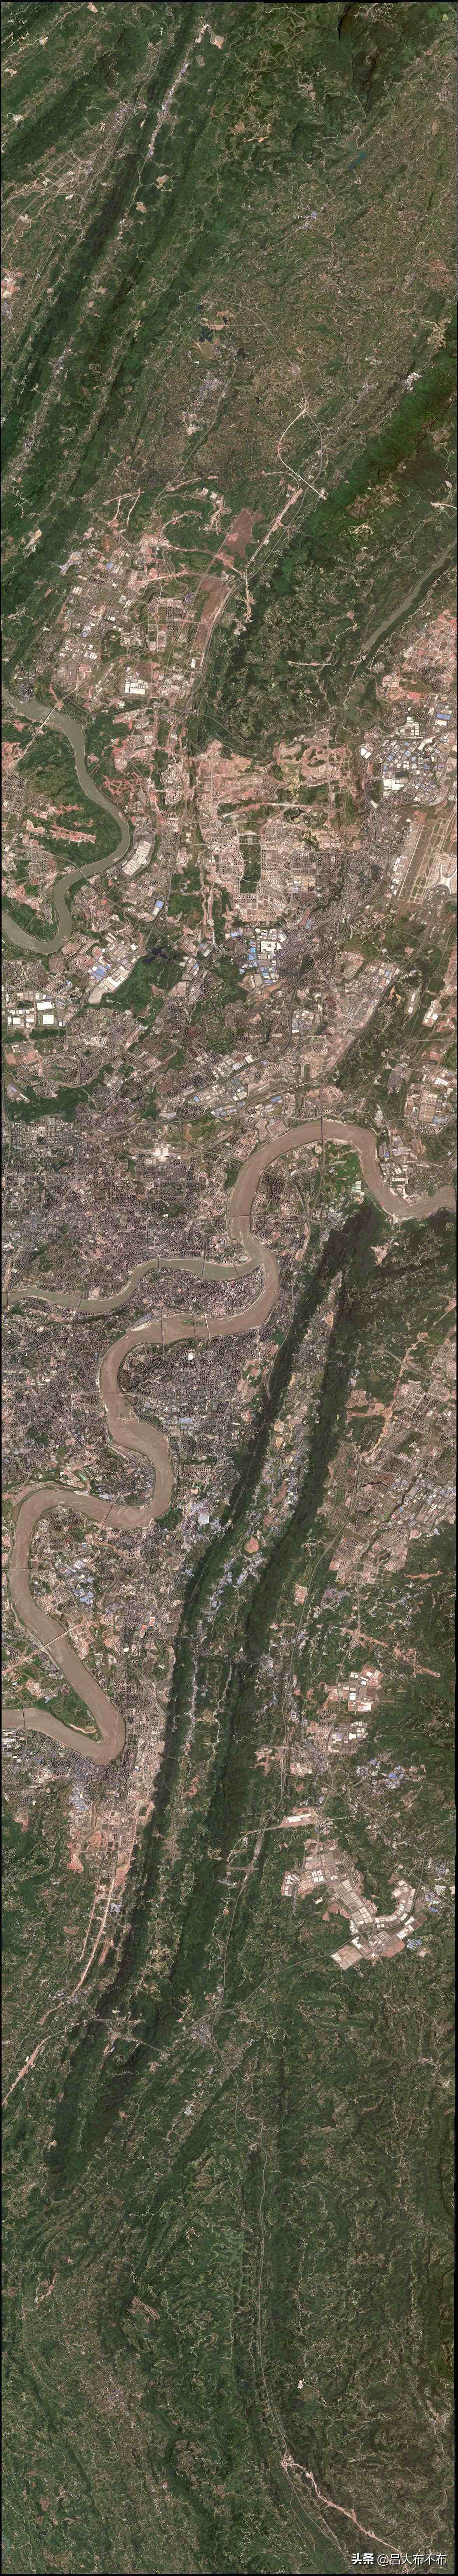 北斗卫星街景图片